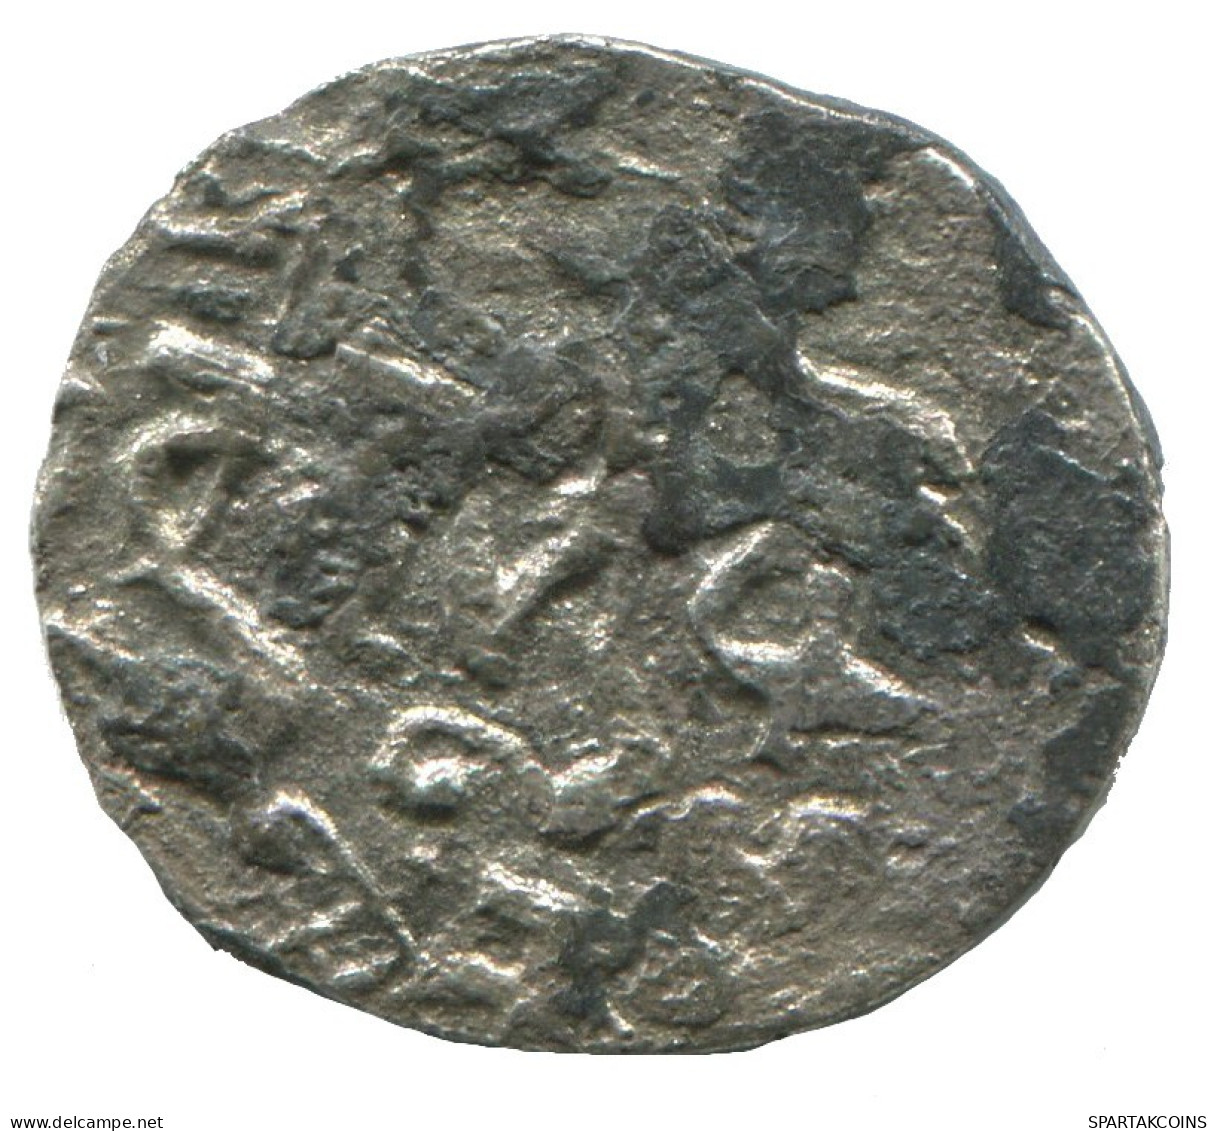 GOLDEN HORDE Silver Dirham Medieval Islamic Coin 1.3g/17mm #NNN2009.8.U.A - Islamic